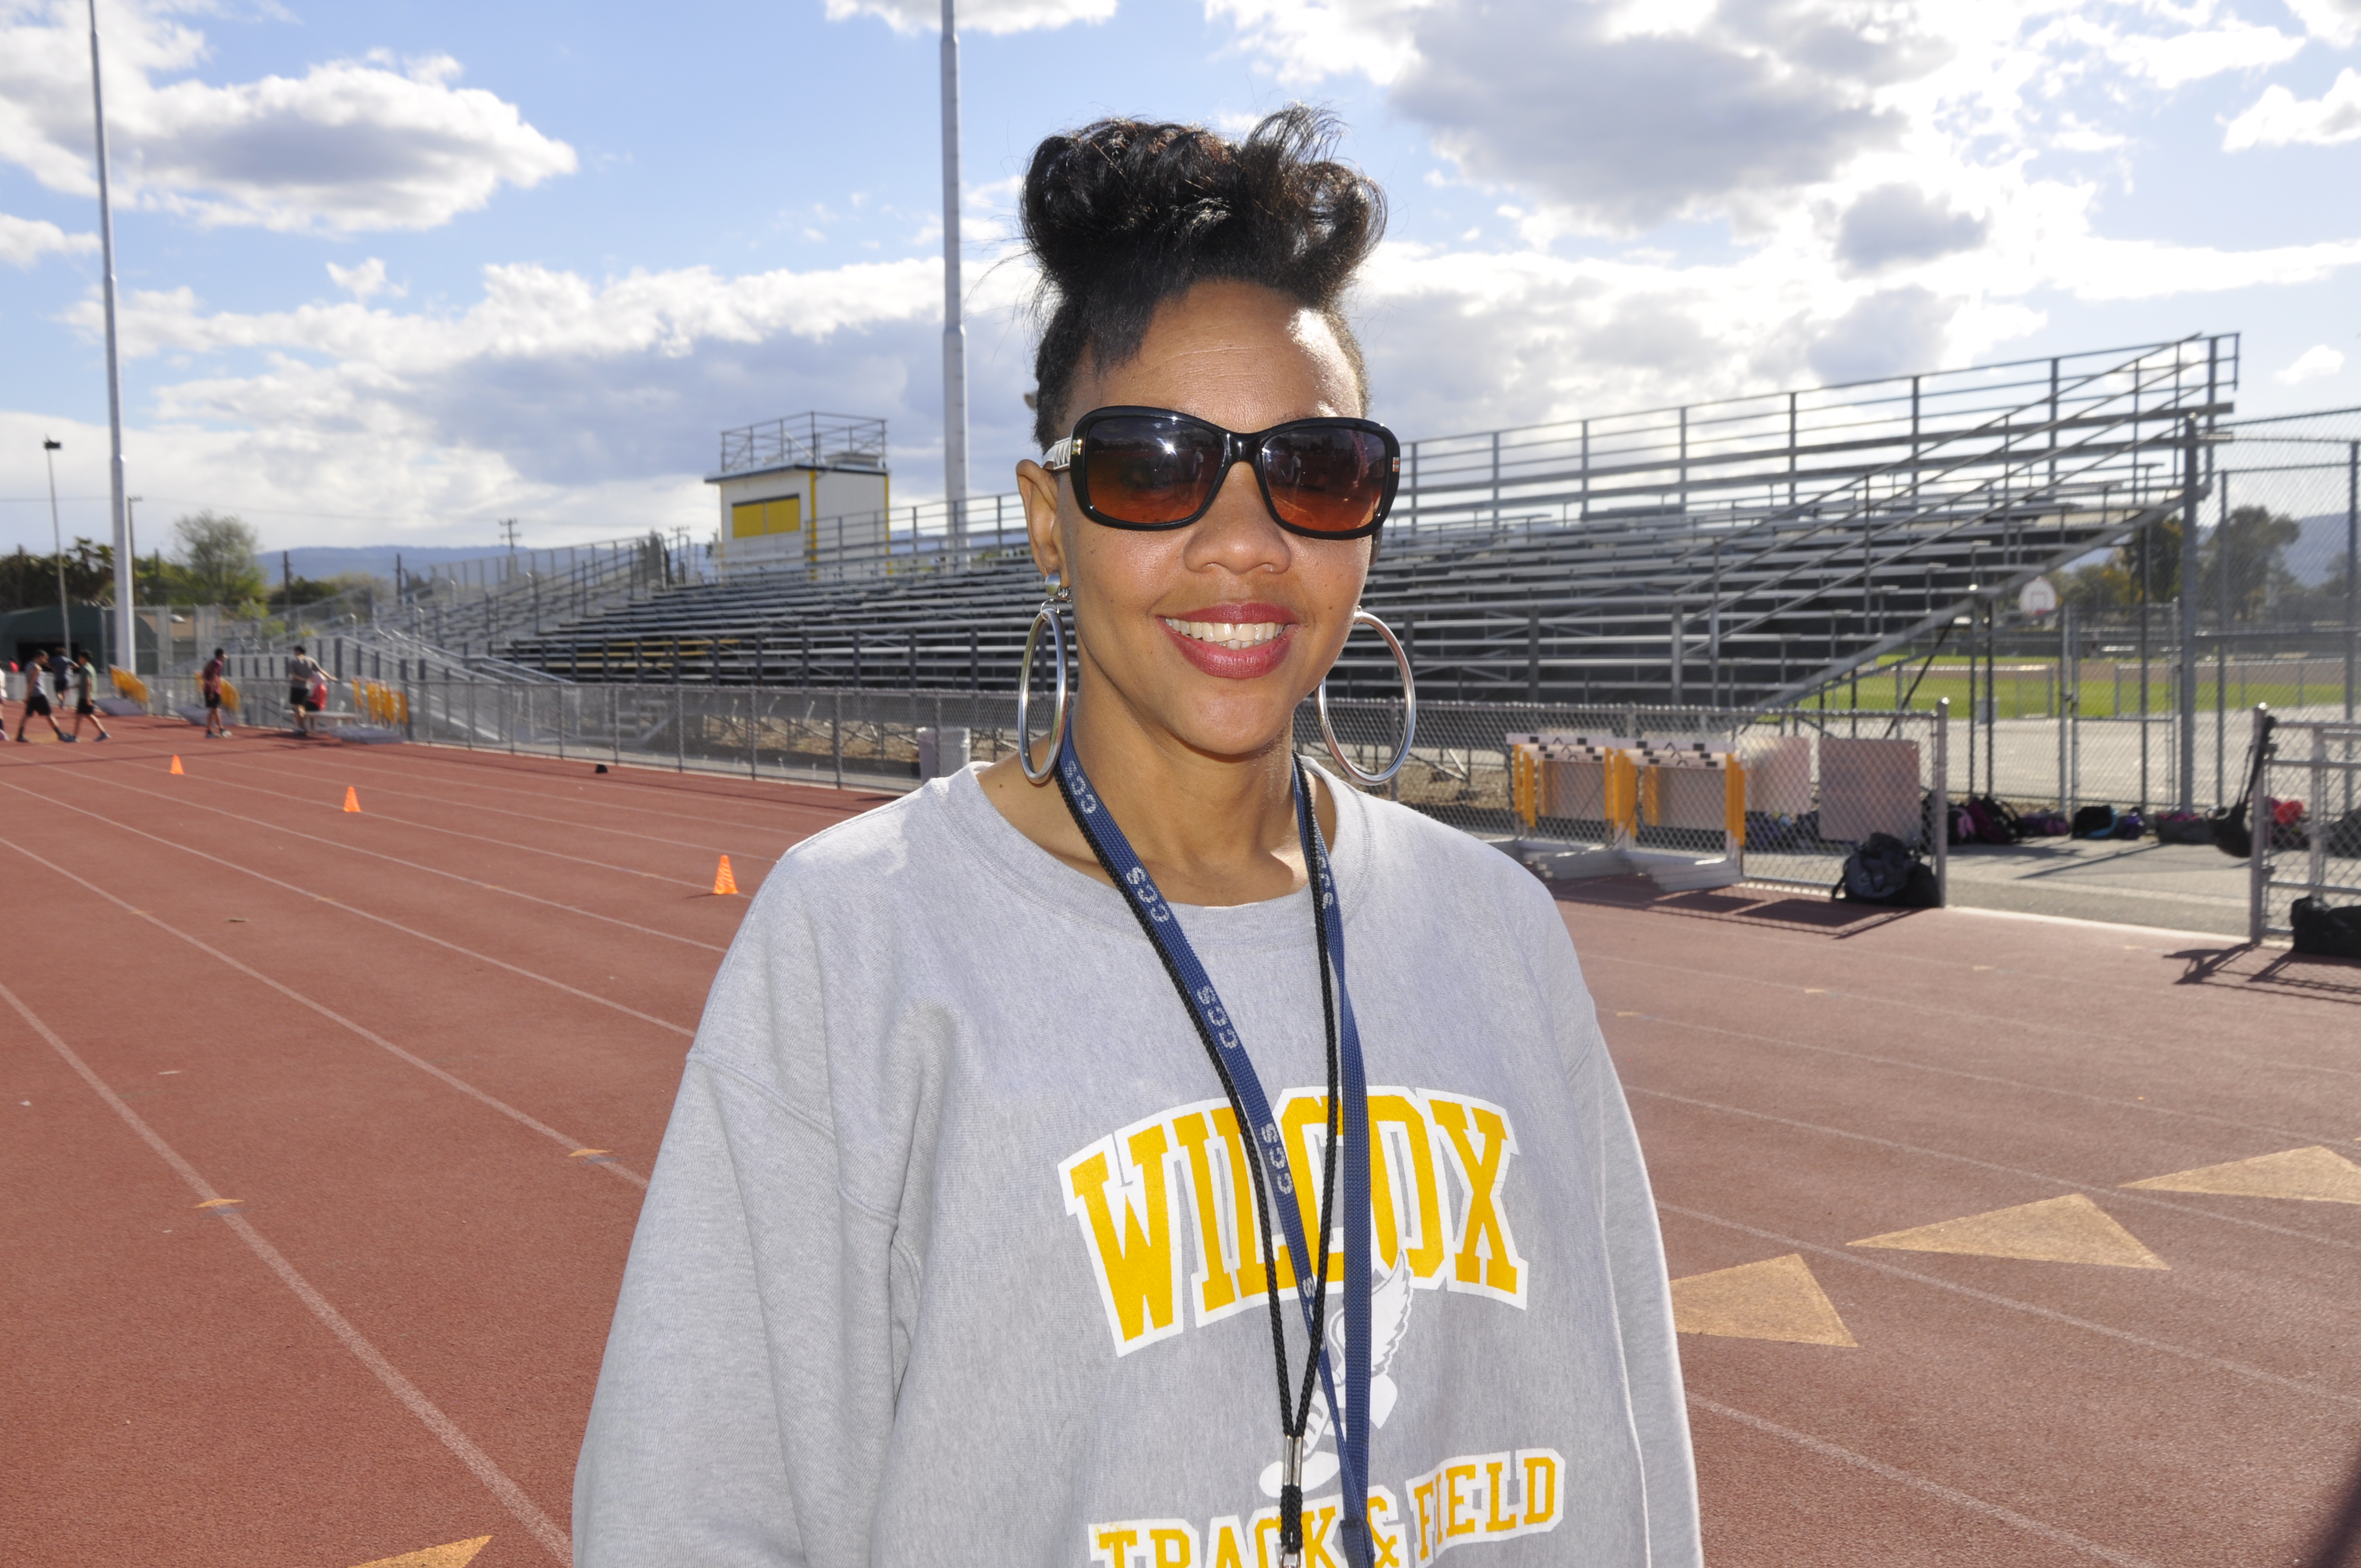 Cancer-stricken Wilcox track coach has former NFL player in her corner